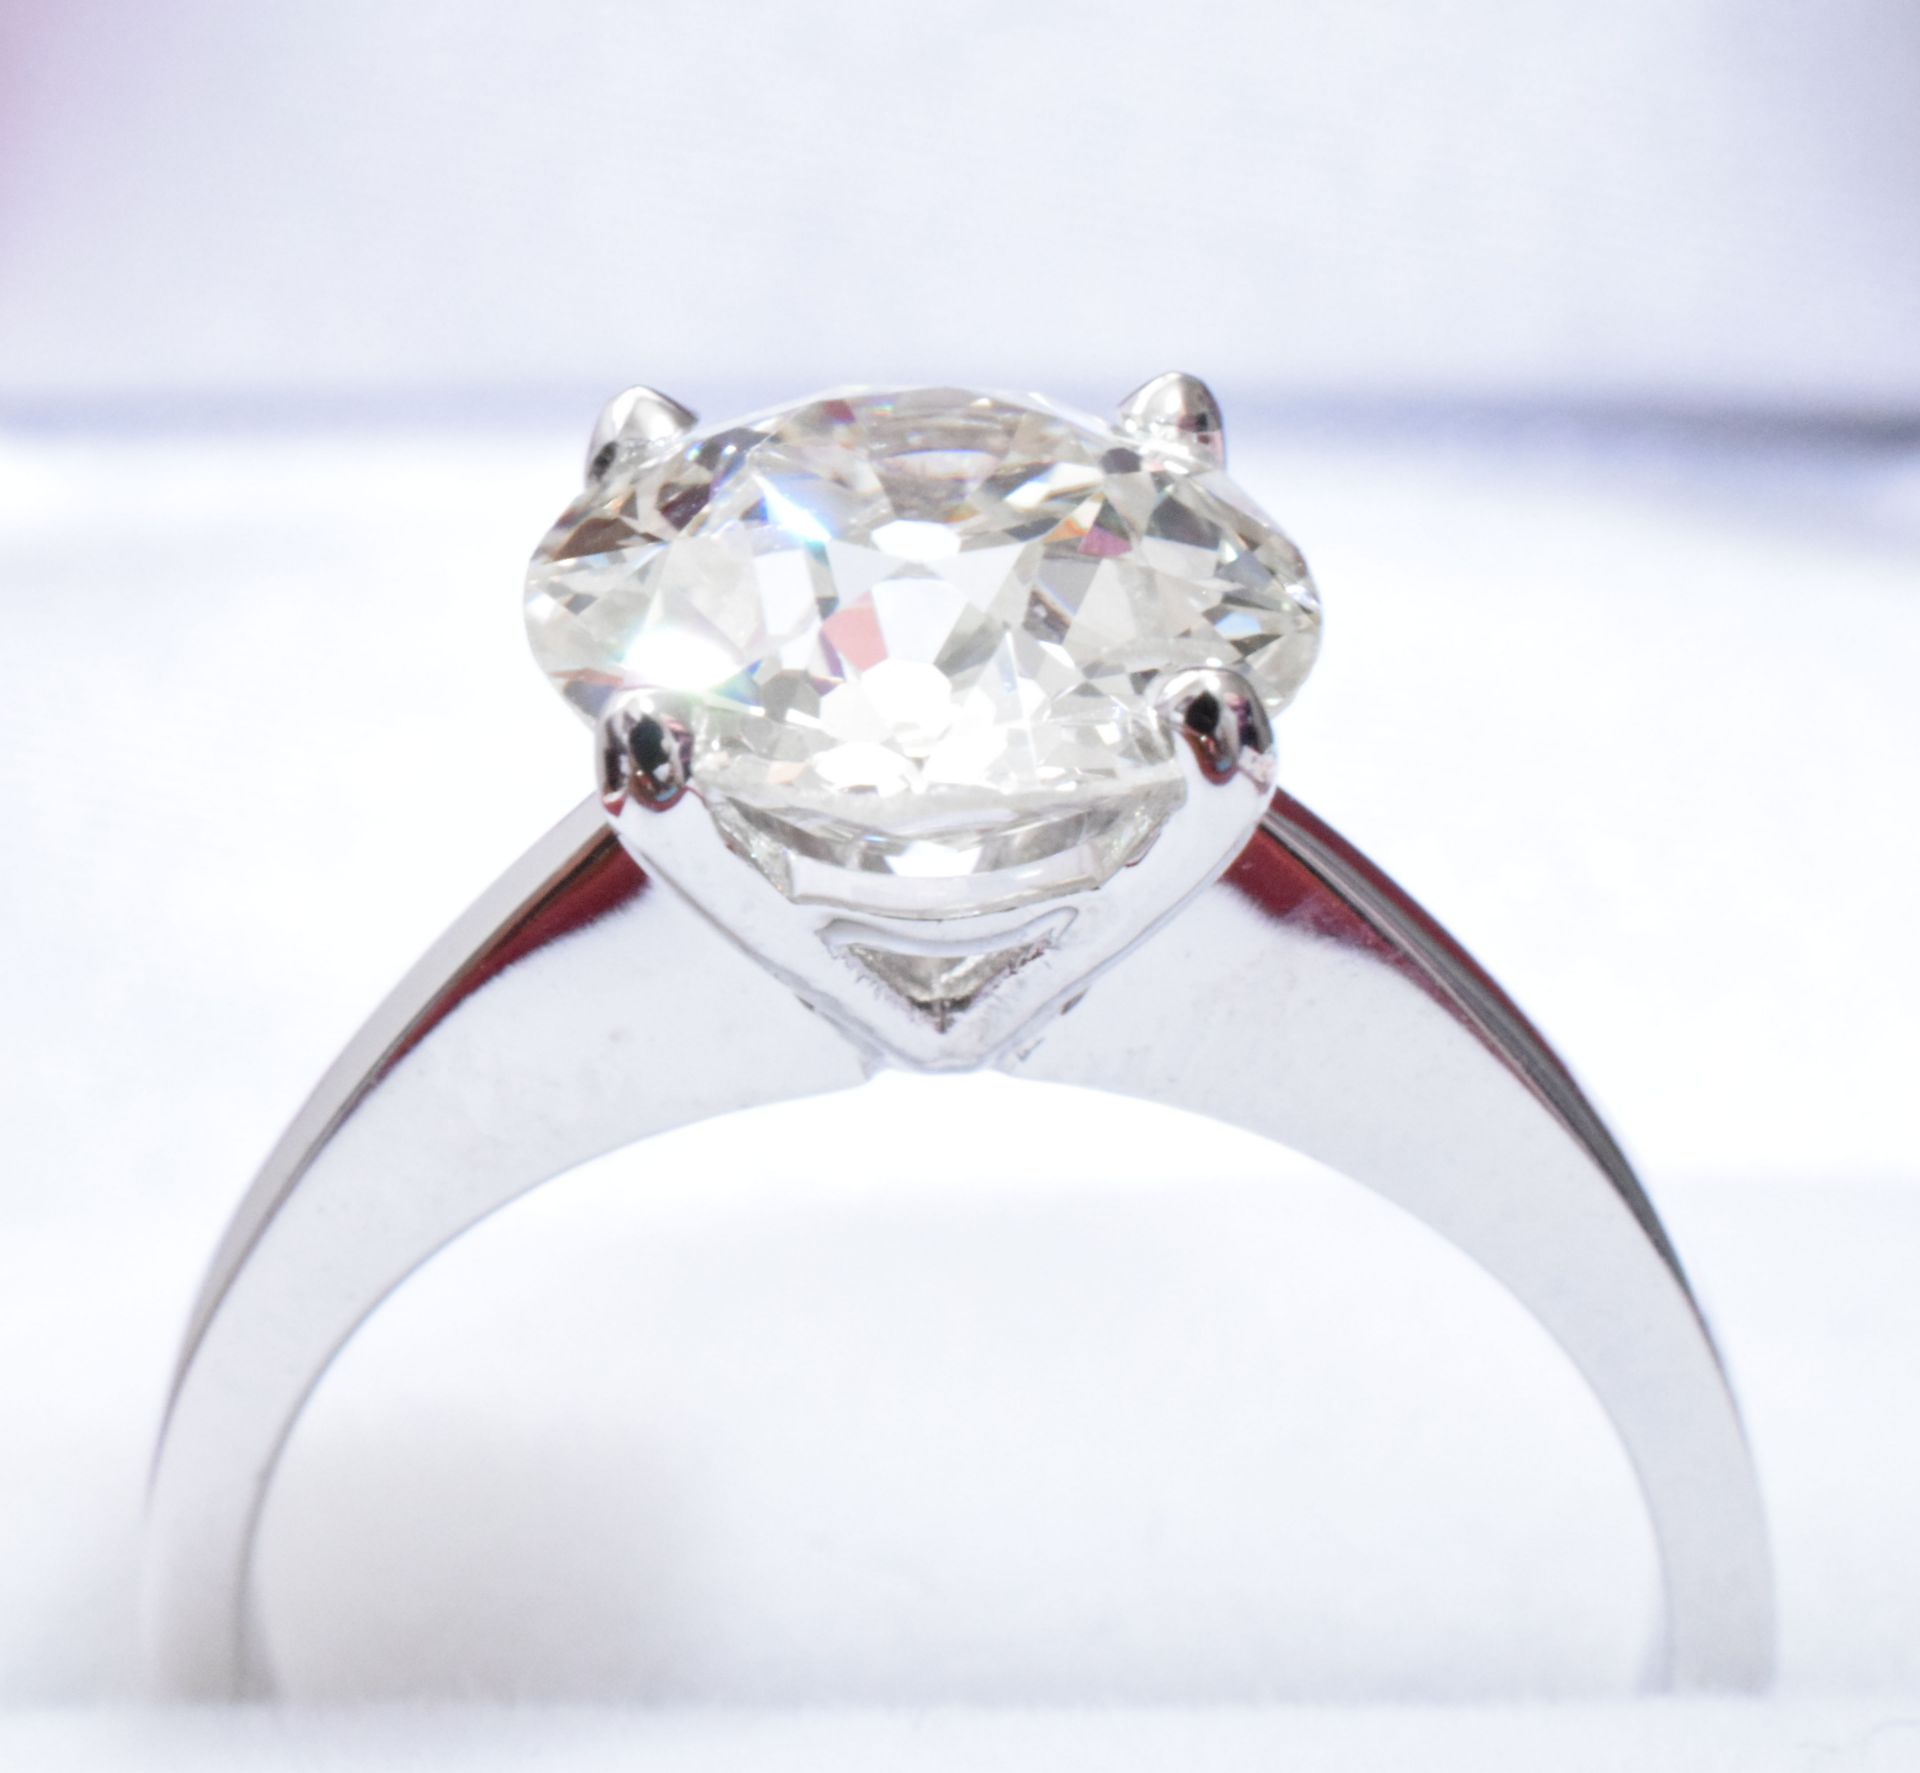 2.50 Carat Diamond Ring Set in White Gold - Image 5 of 6